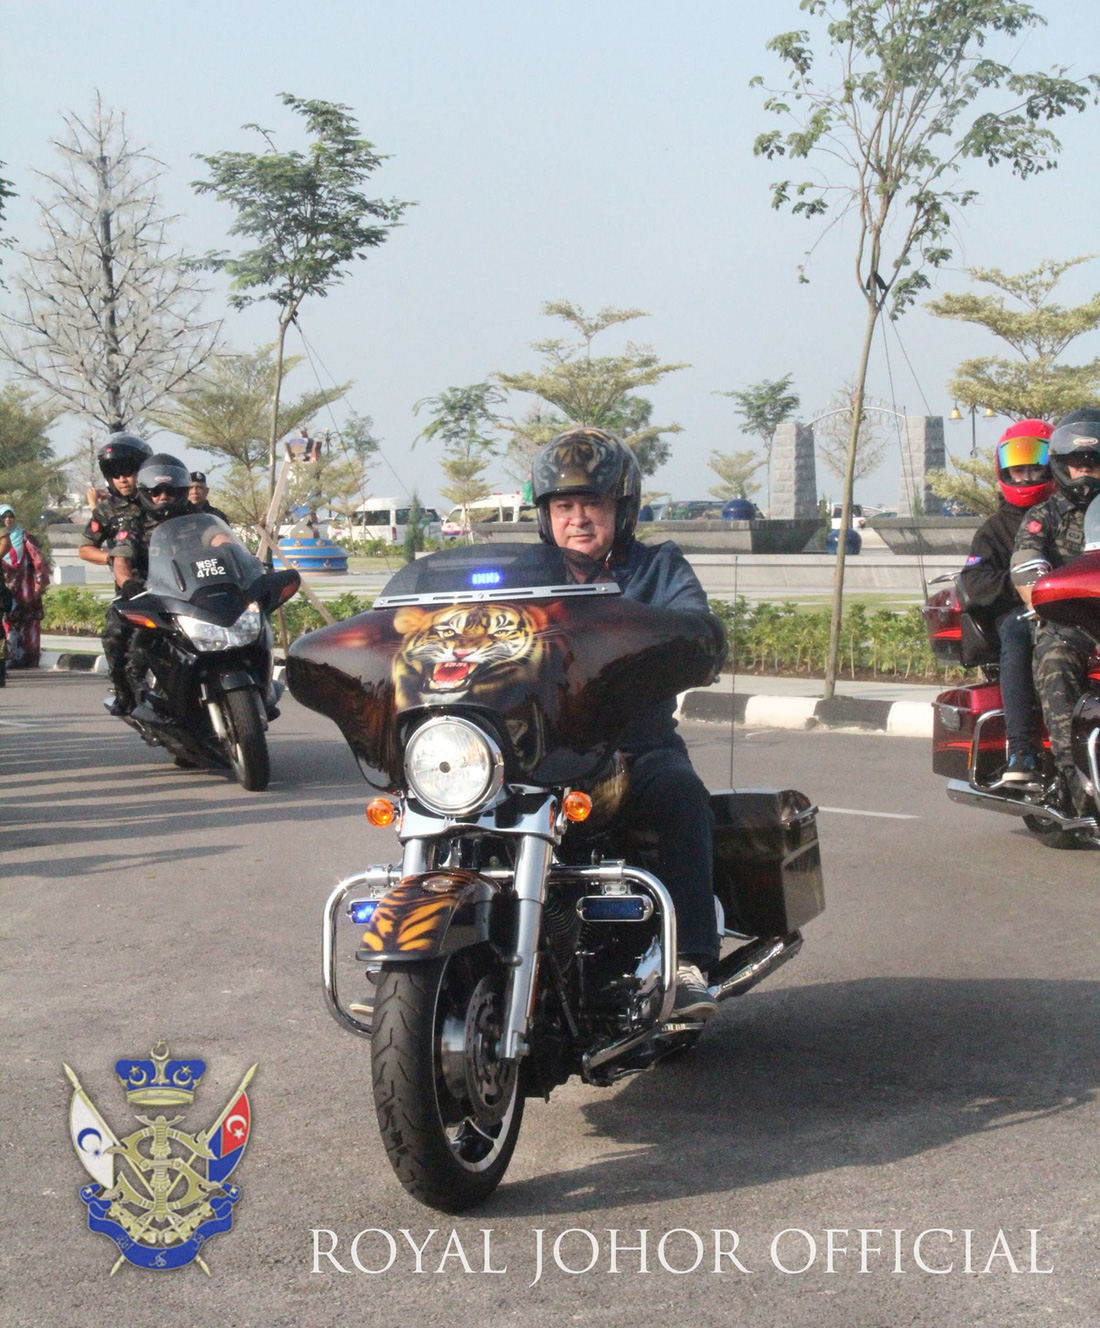 Theo The Guardian, Sultan Ibrahim đam mê mô tô đến mức thường dạo chơi trên chiếc Harley-Davidson quanh Johor. Đôi khi ông còn mang bộ sưu tập xe đến các triển lãm - Ảnh: Sultan Ibrahim Sultan Iskandar/Facebook